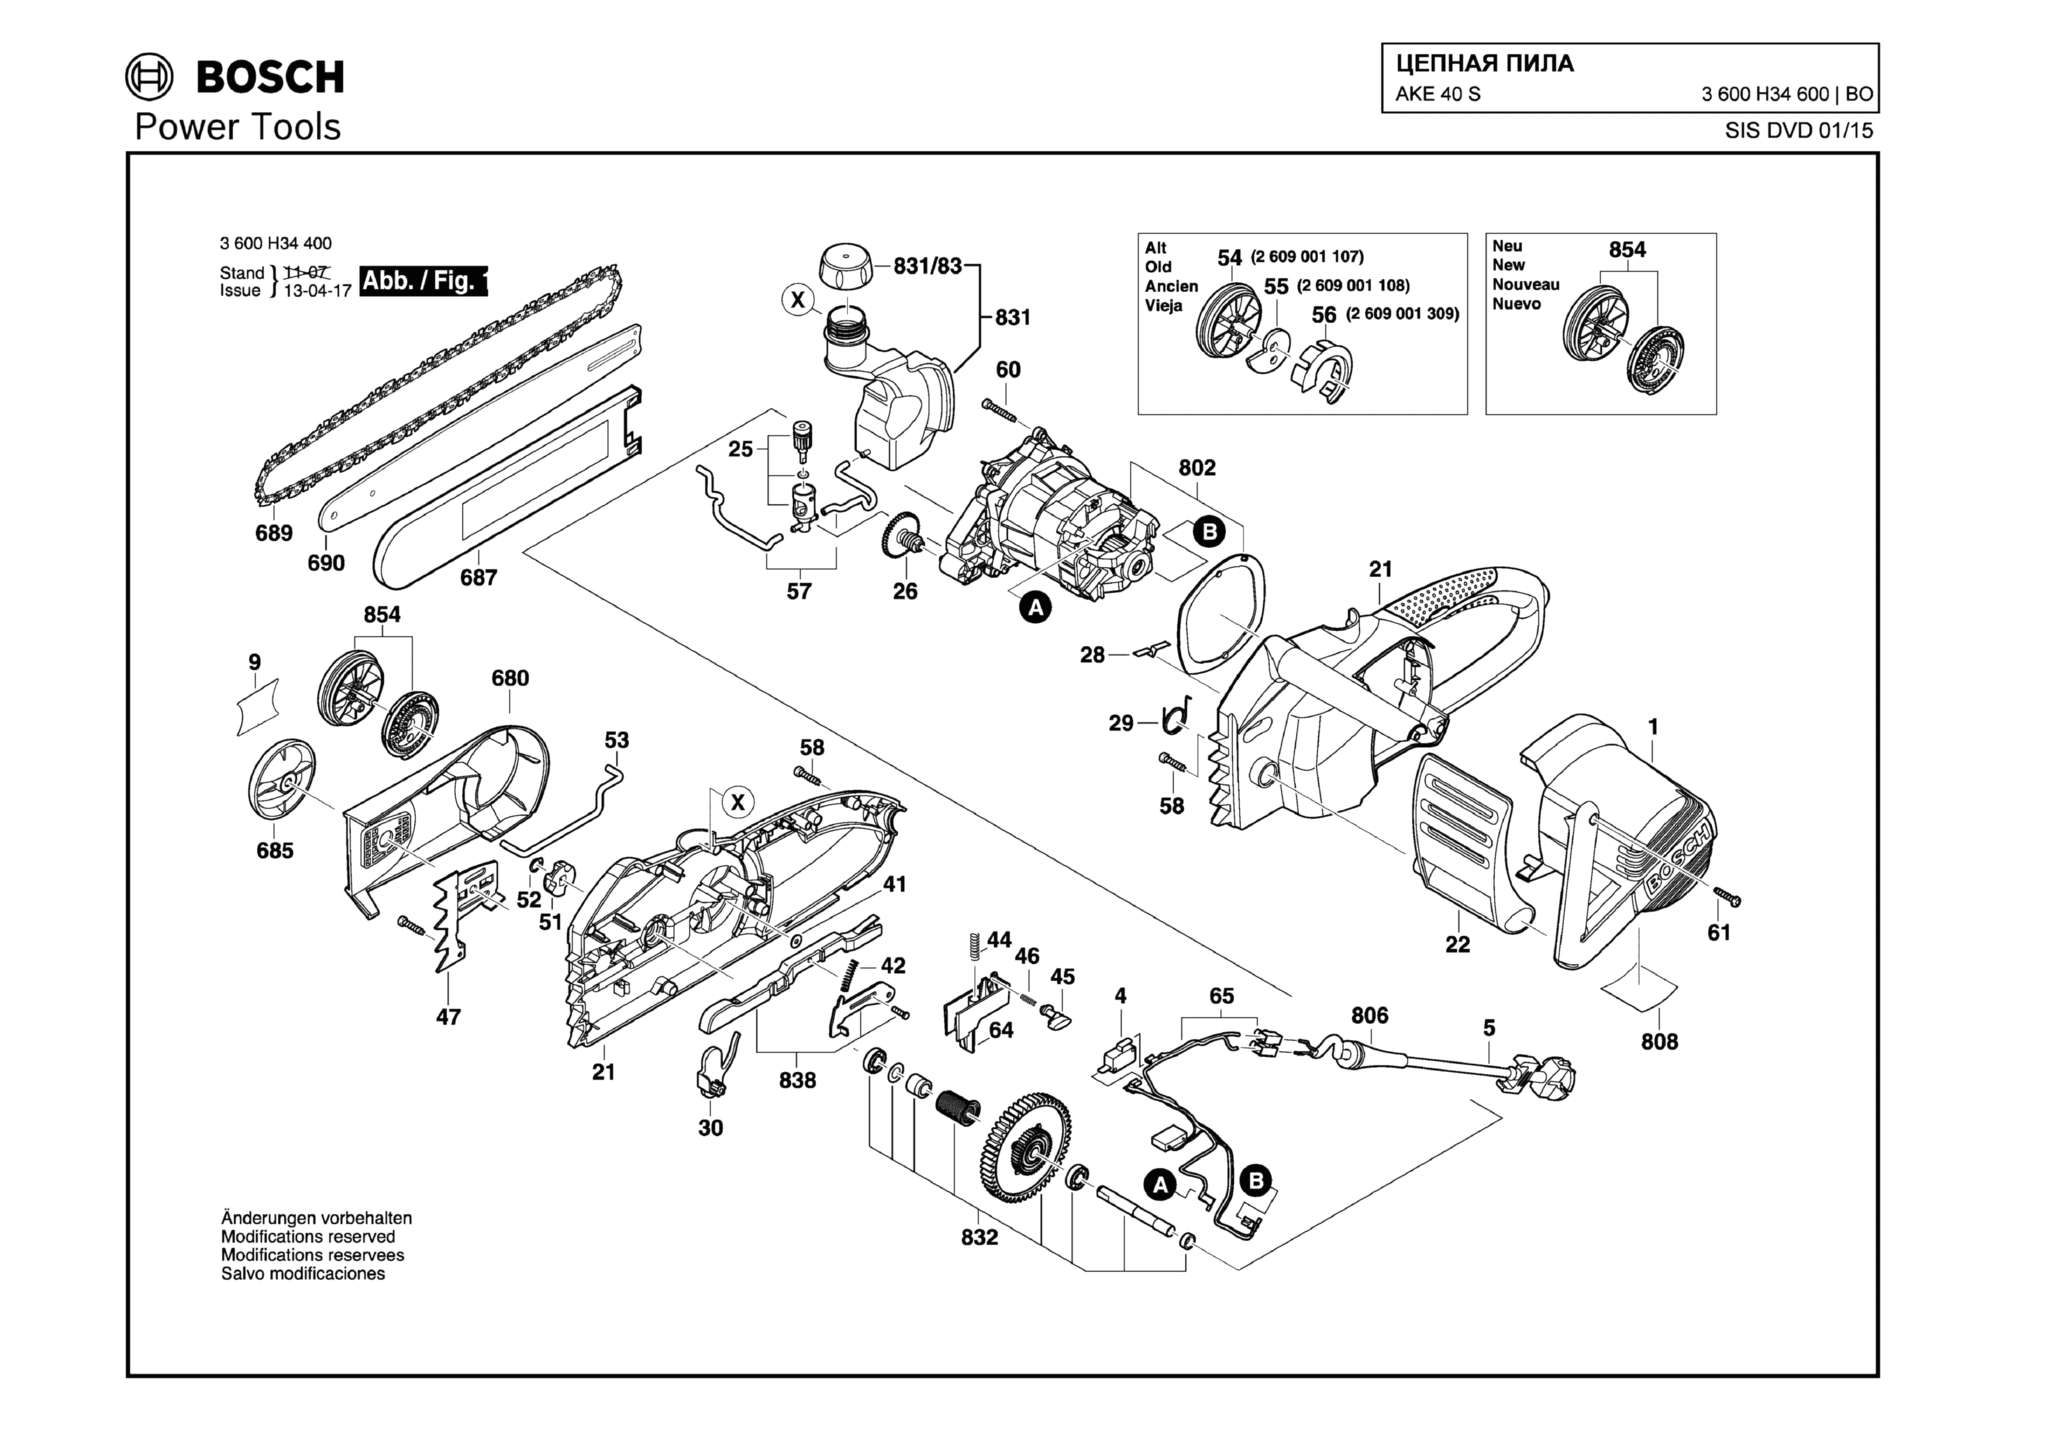 Запчасти, схема и деталировка Bosch AKE 40 S (ТИП 3600H34600)